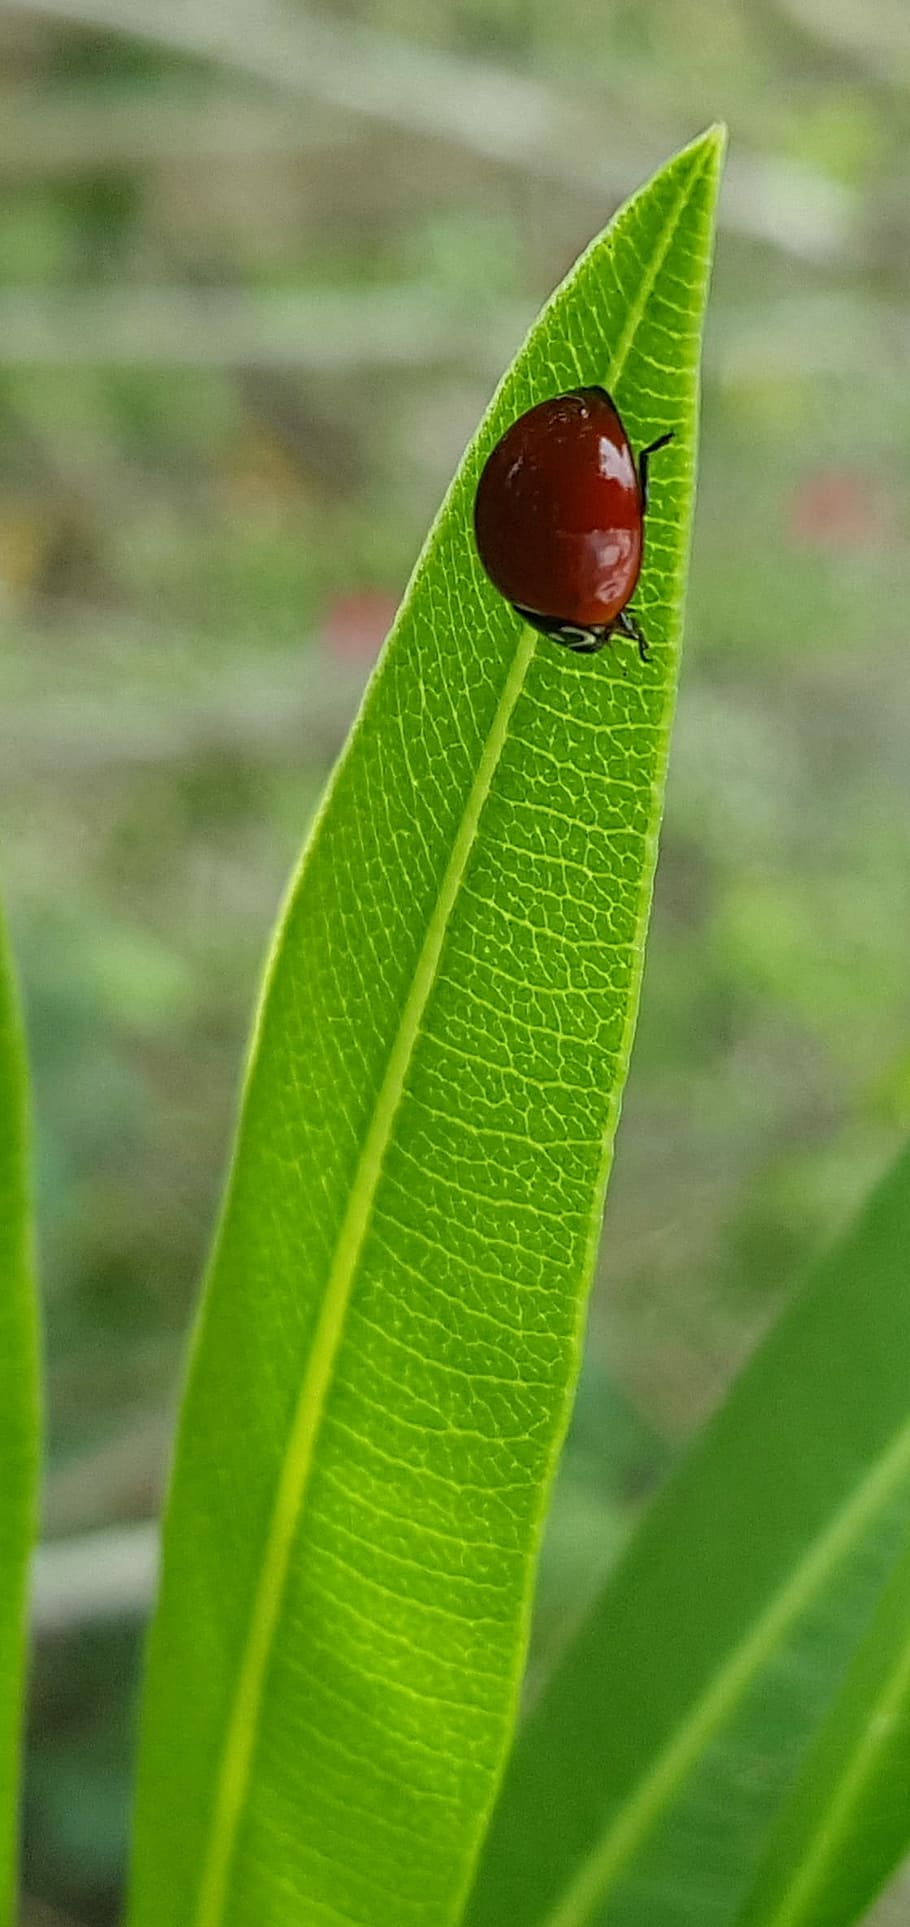 Polished, Lady Beetle, polished lady beetle, ladybug, bug, beetle, insect, flying insect, oleander leaf, leaf